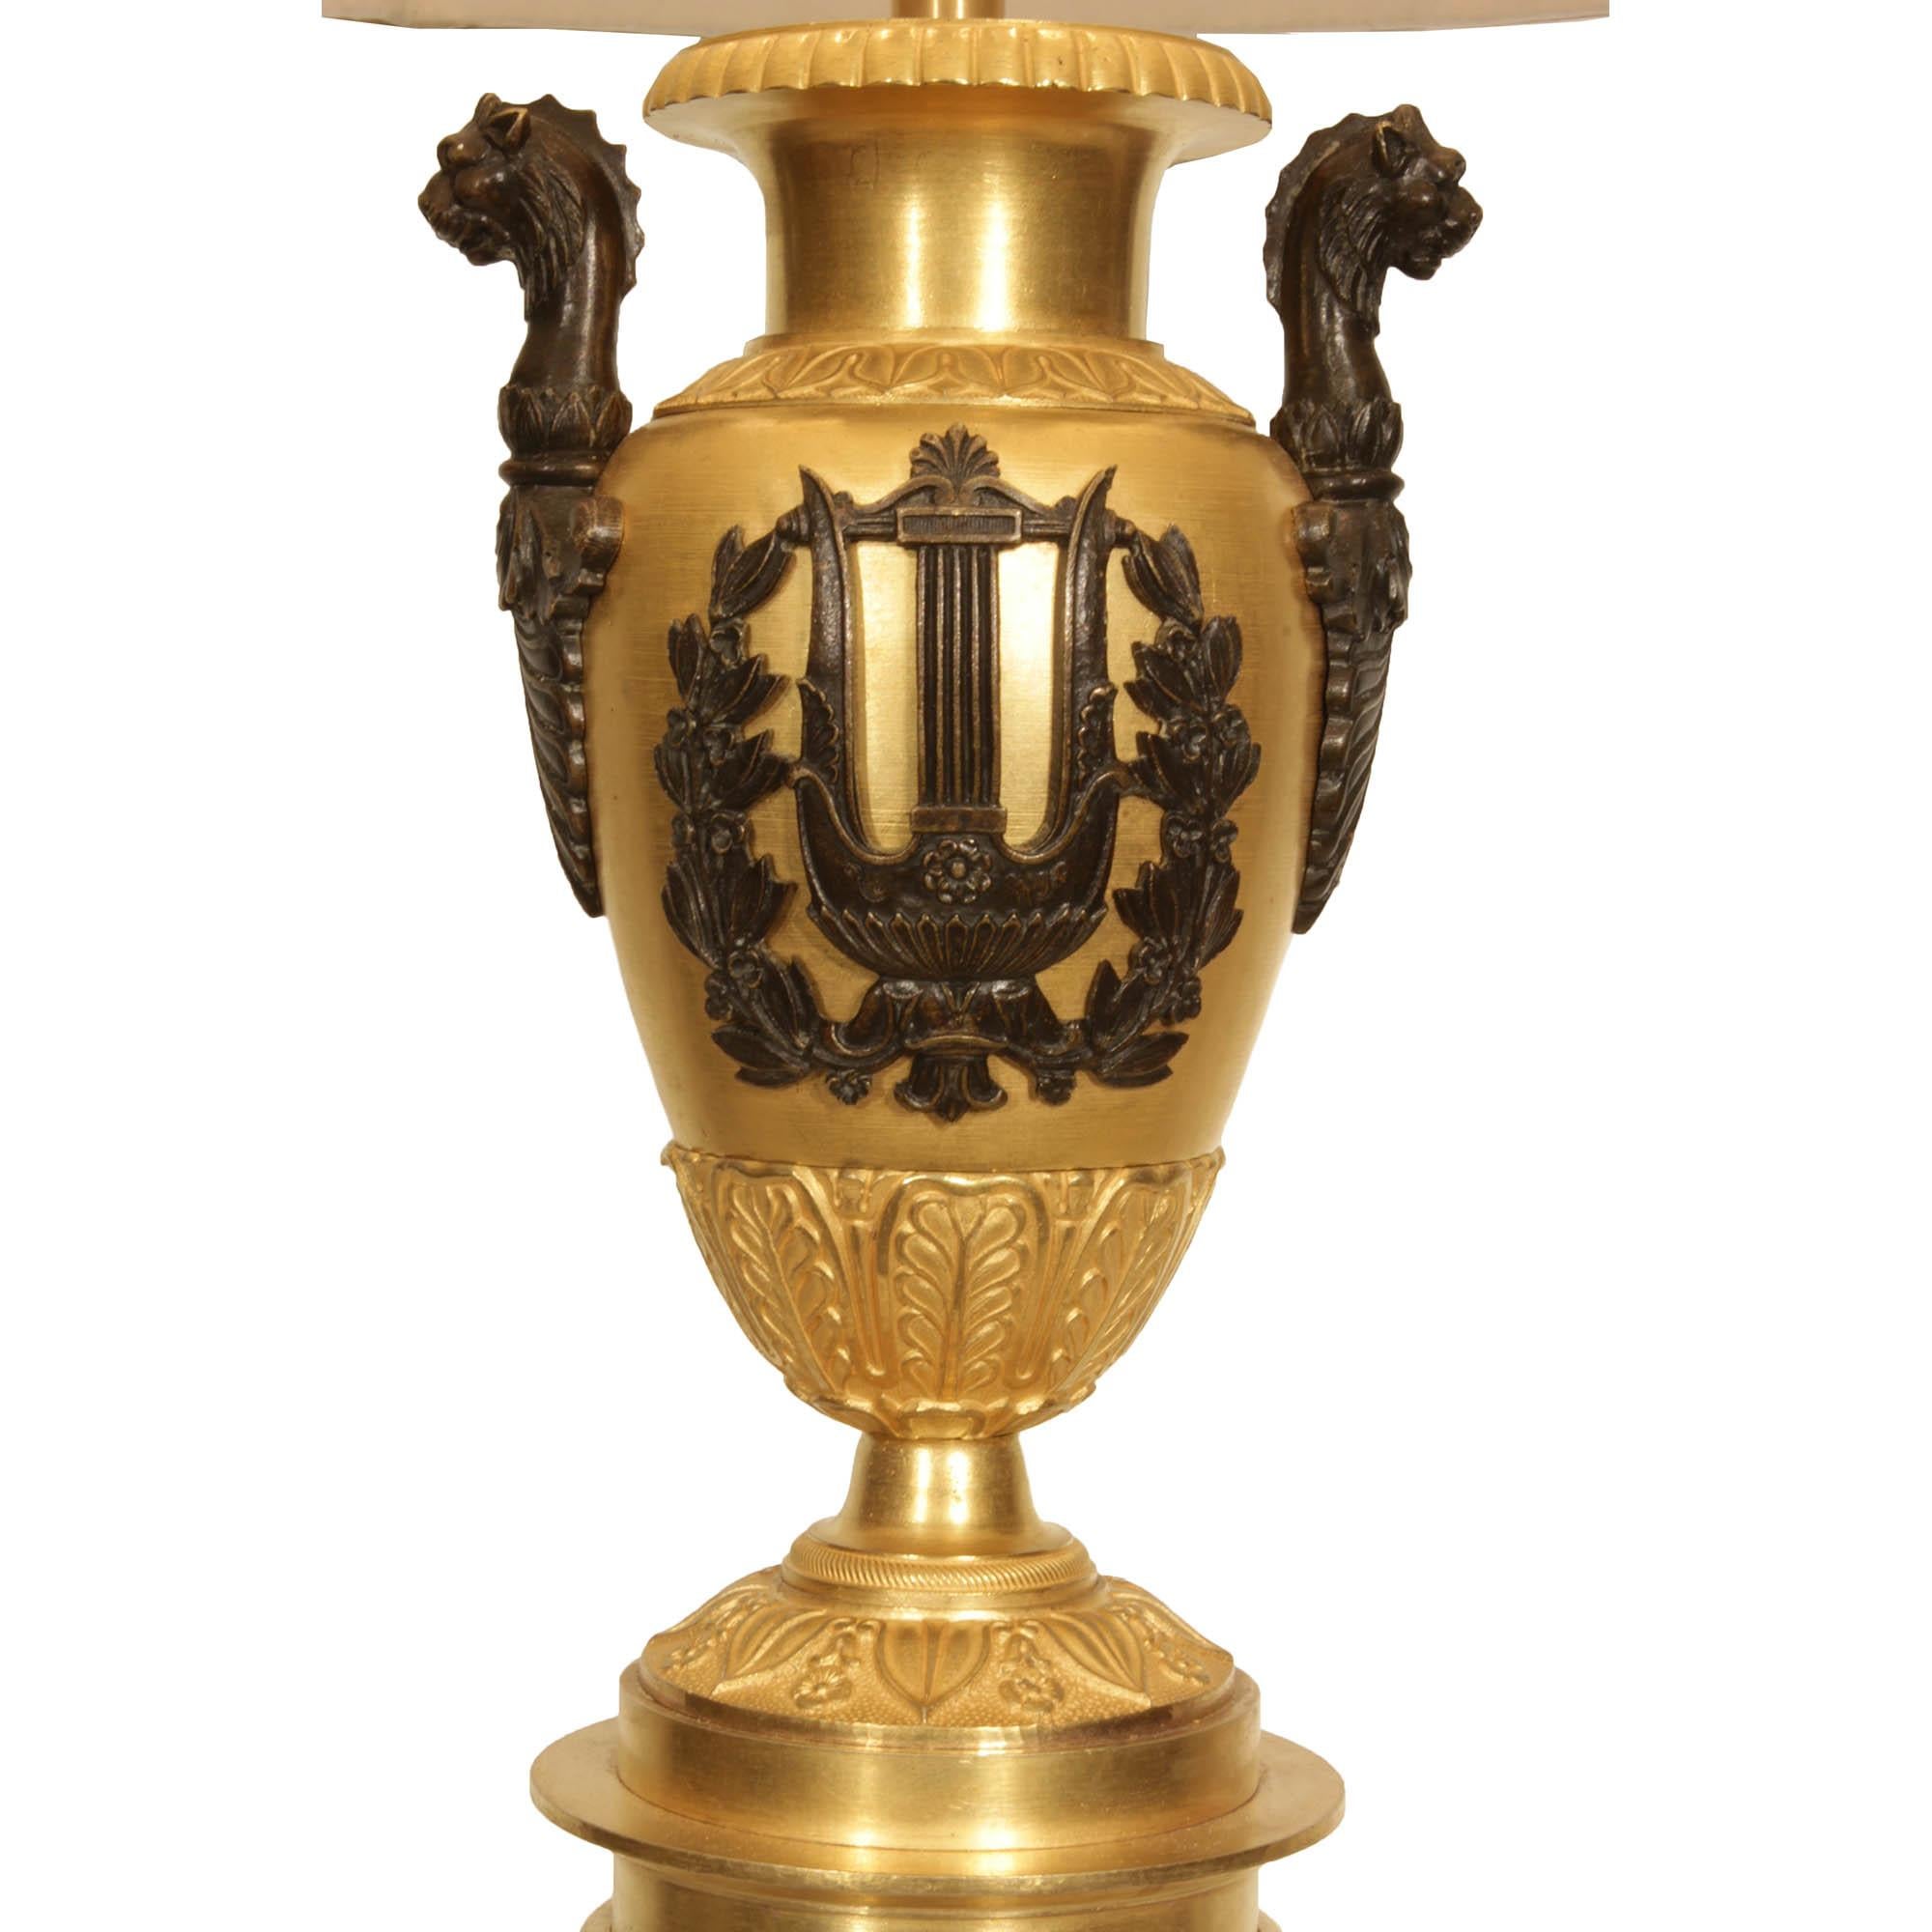 Une merveilleuse paire de lampes néo-cassiques françaises du 19ème siècle en bronze doré et patiné. Chaque lampe repose sur une base carrée en bronze doré et une colonne en bronze patiné. Les éléments en forme d'urne en bronze doré sont ornés de